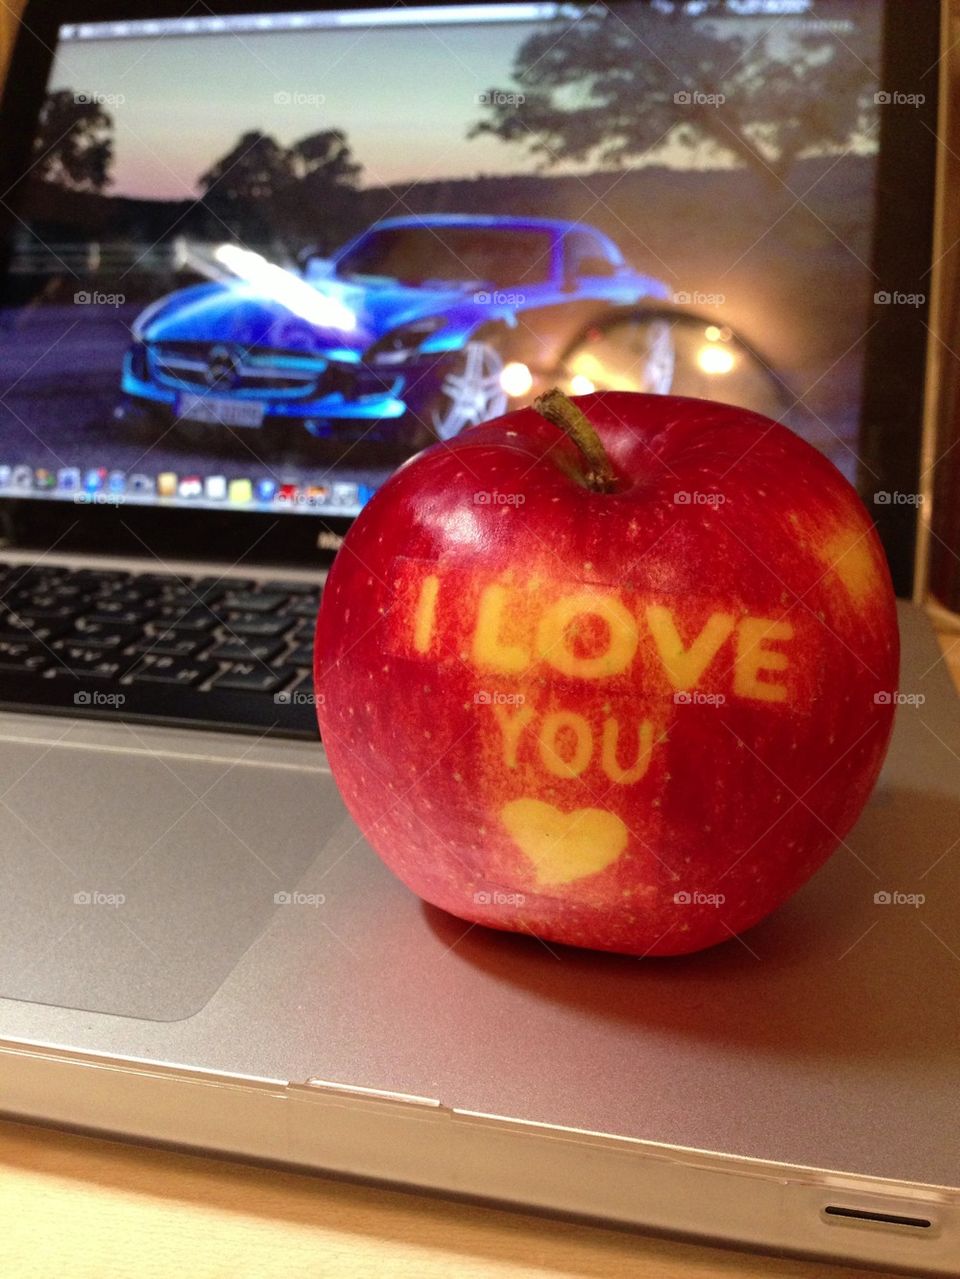 Apple love